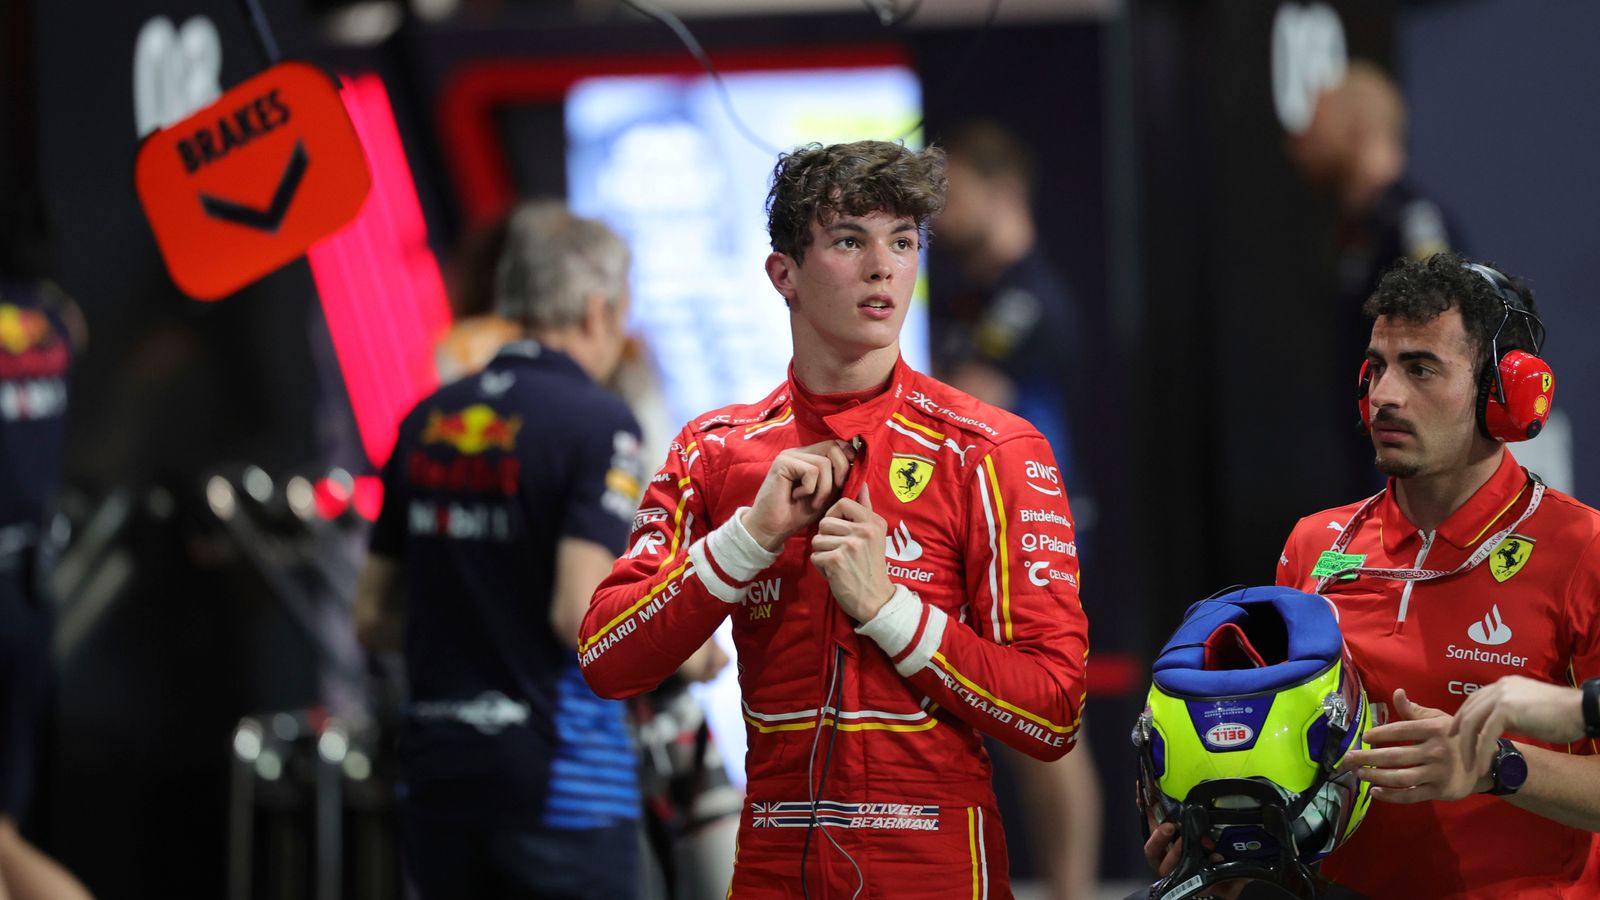 Британският тийнейджър Оливър Беърман заменя Карлос Сайнц на Ферари в квалификацията преди Гран При на Саудитска Арабия